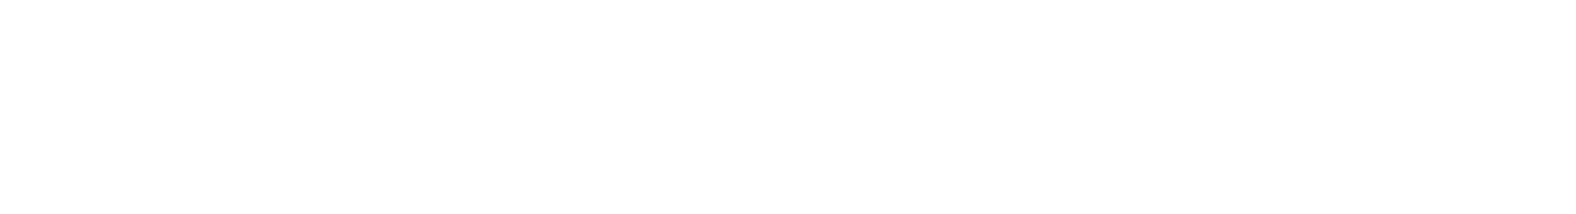 Savers Value Village logo large for dark backgrounds (transparent PNG)